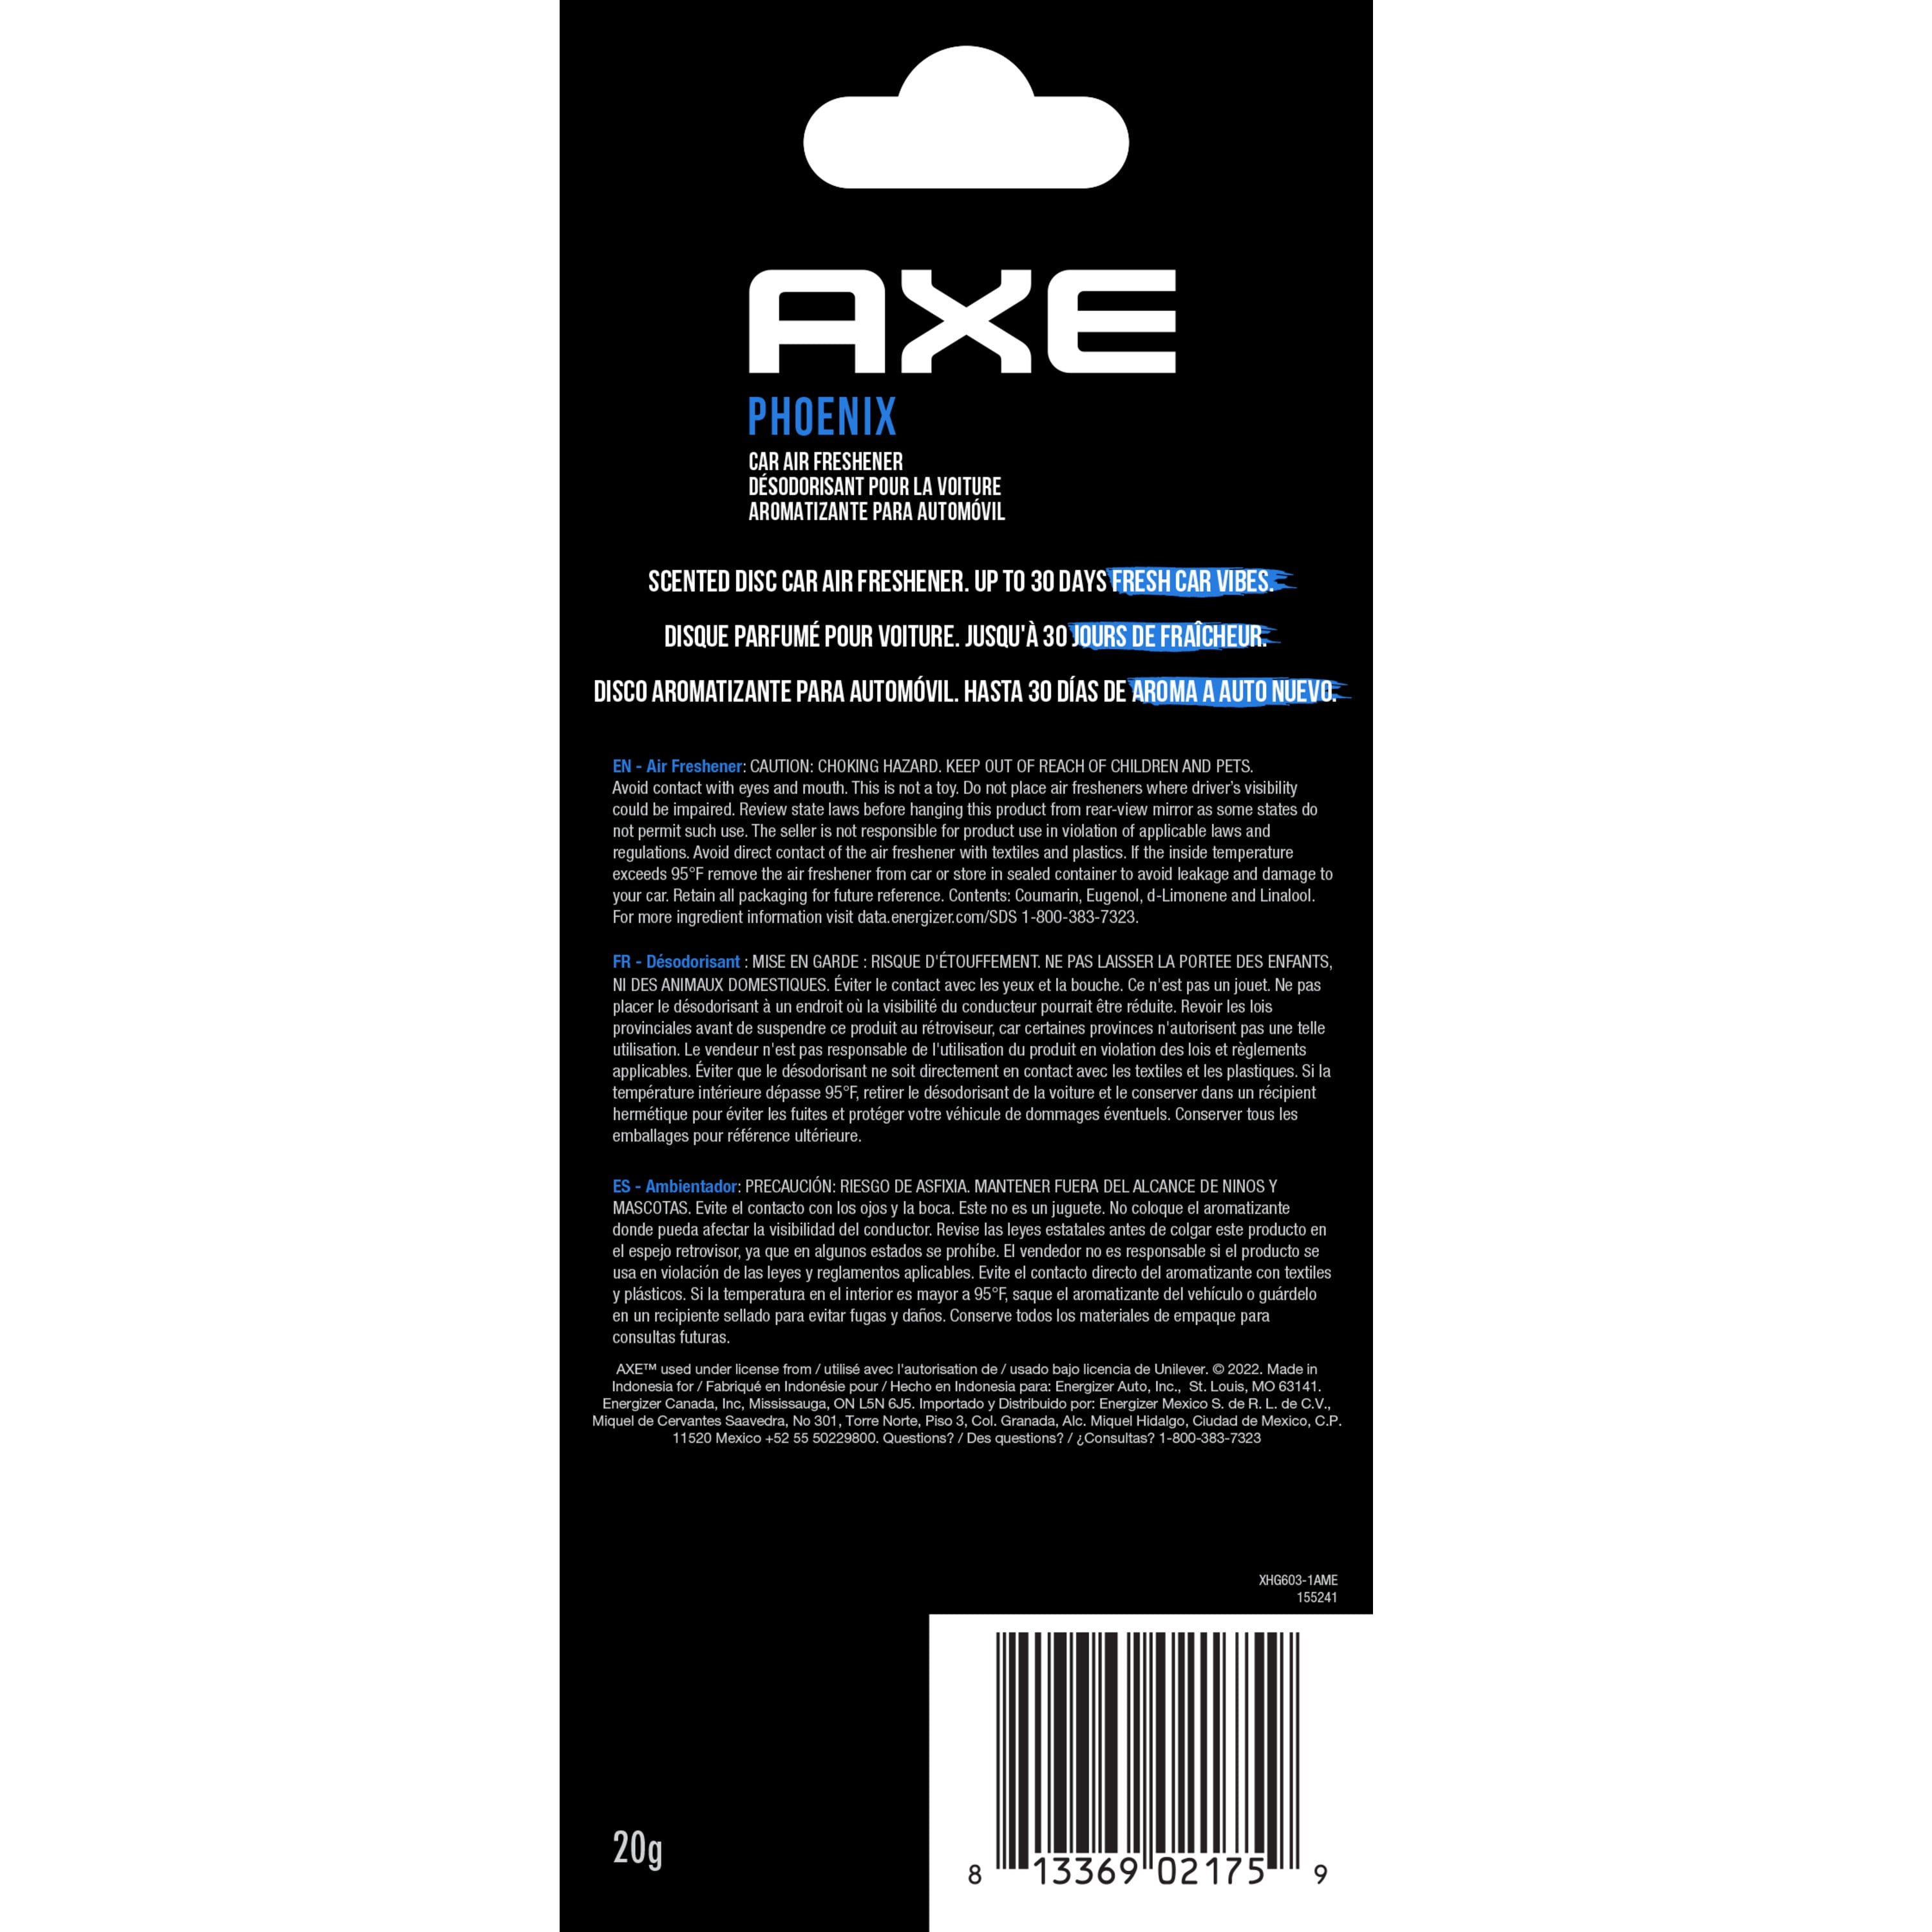 Axe deodorant car air freshener deodorant fragrance dispenser fragrance  tree var